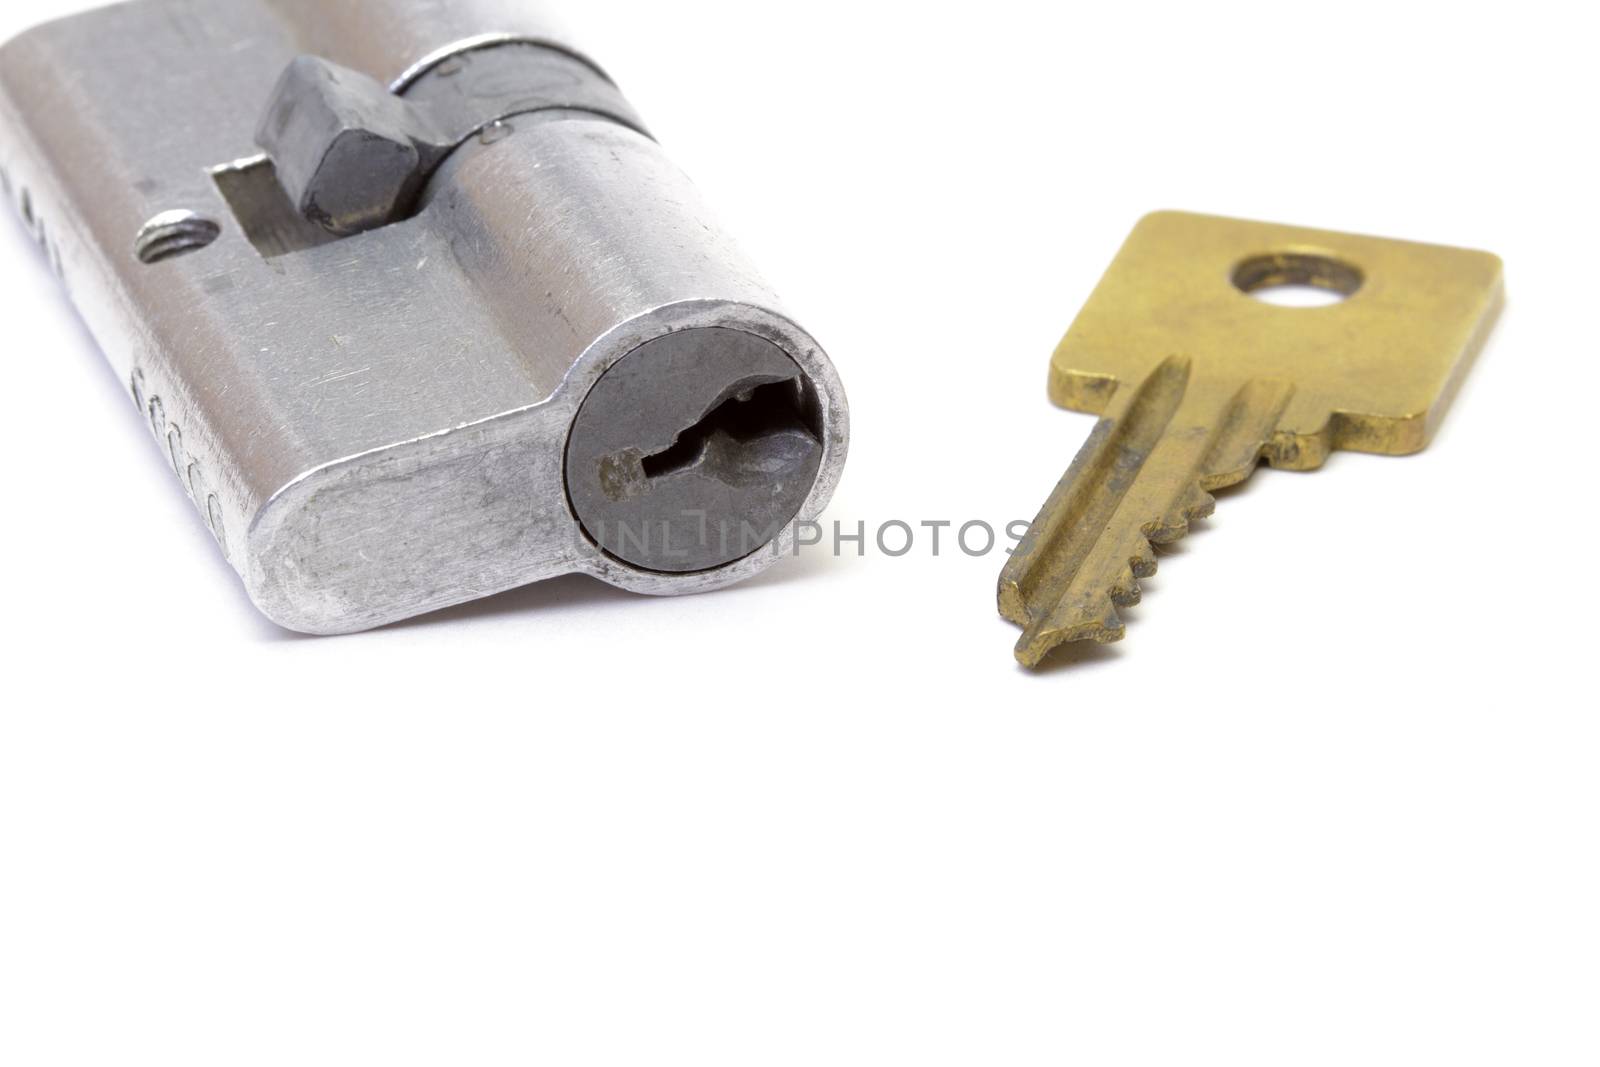 Lock with key by marslander